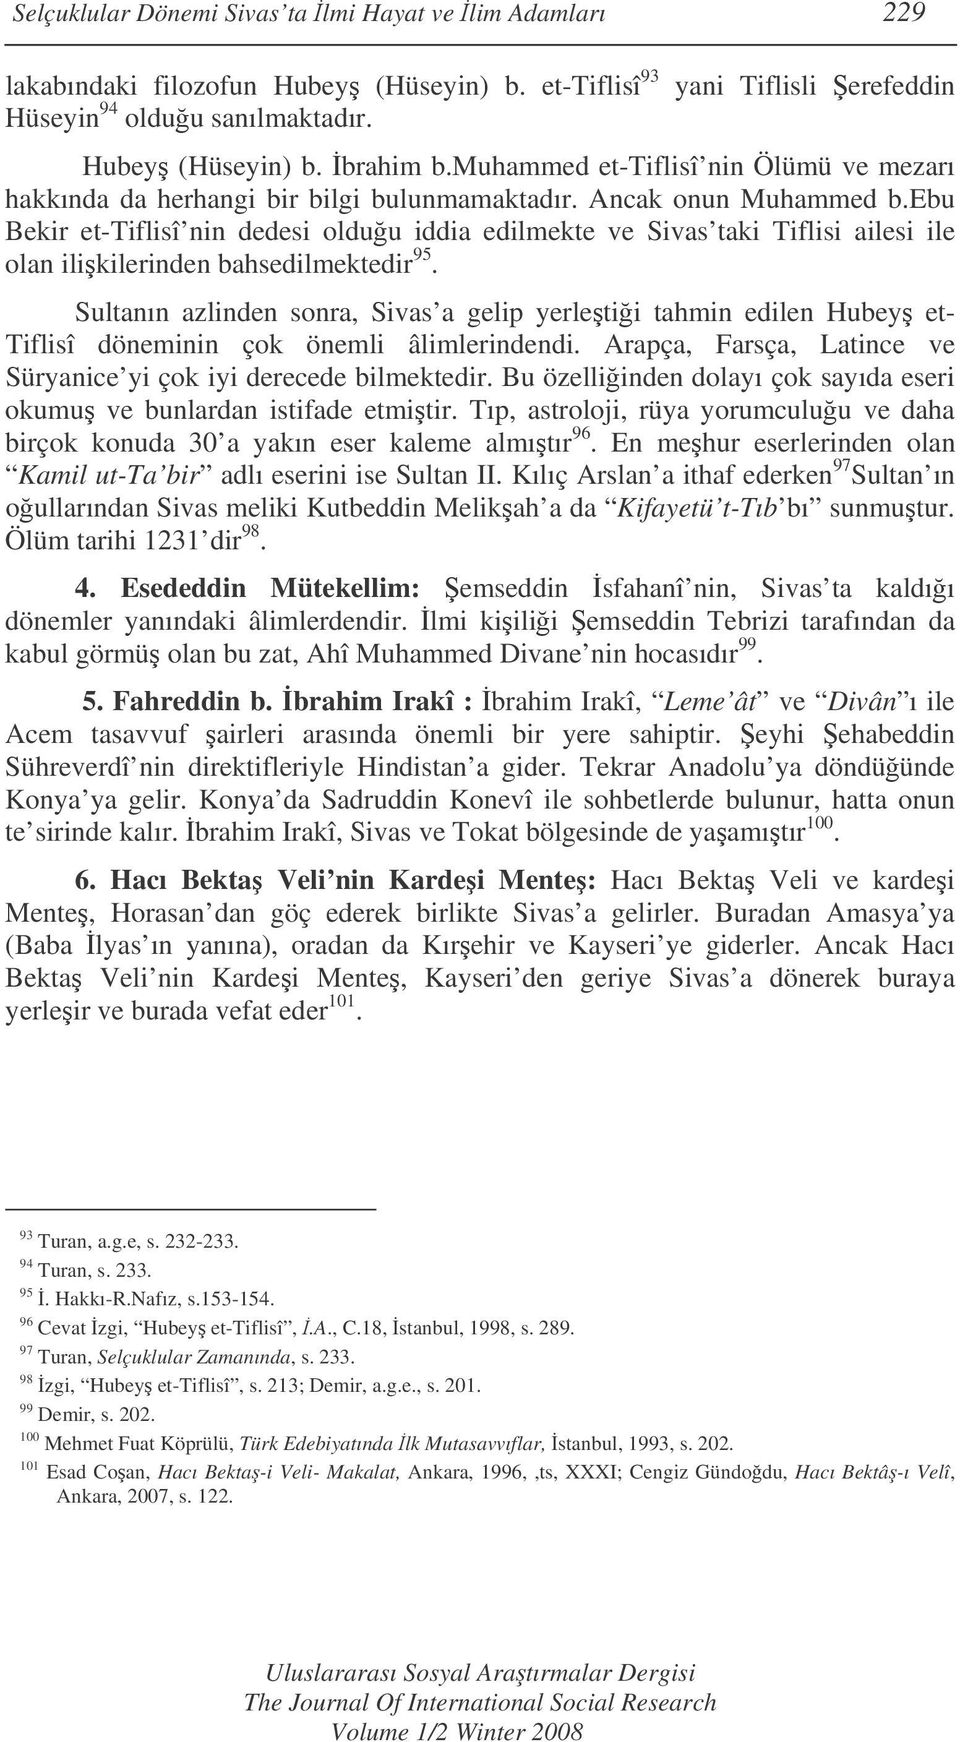 ebu Bekir et-tiflisî nin dedesi olduu iddia edilmekte ve Sivas taki Tiflisi ailesi ile olan ilikilerinden bahsedilmektedir 95.